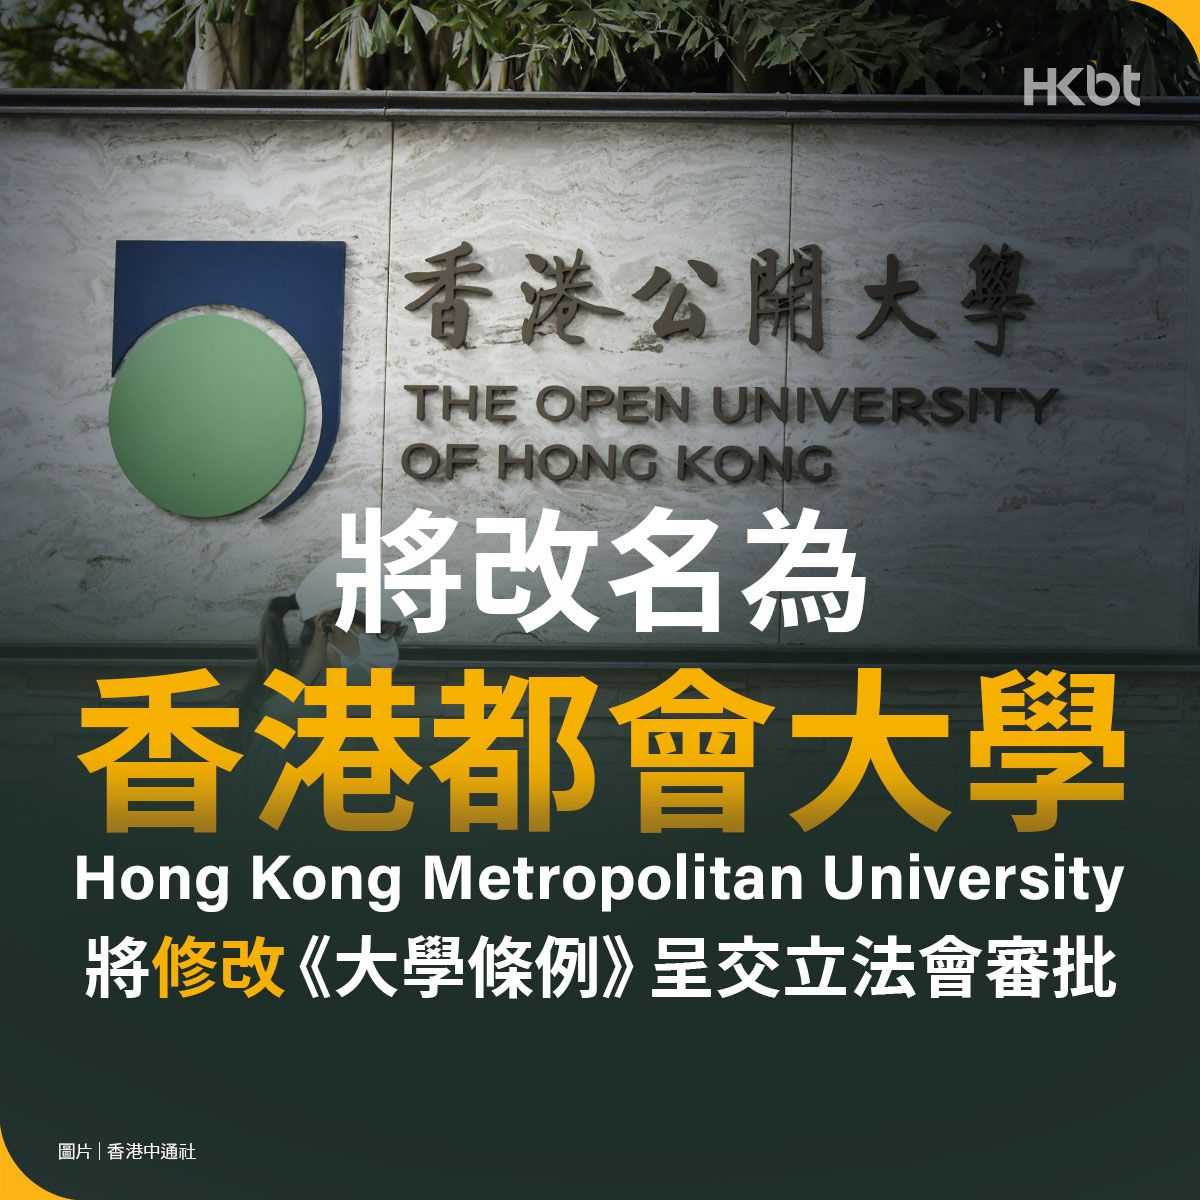 香港公開大學將改名為香港都會大學 Hong Kong Metropolitan University 稍後呈交立法會修改大學條例